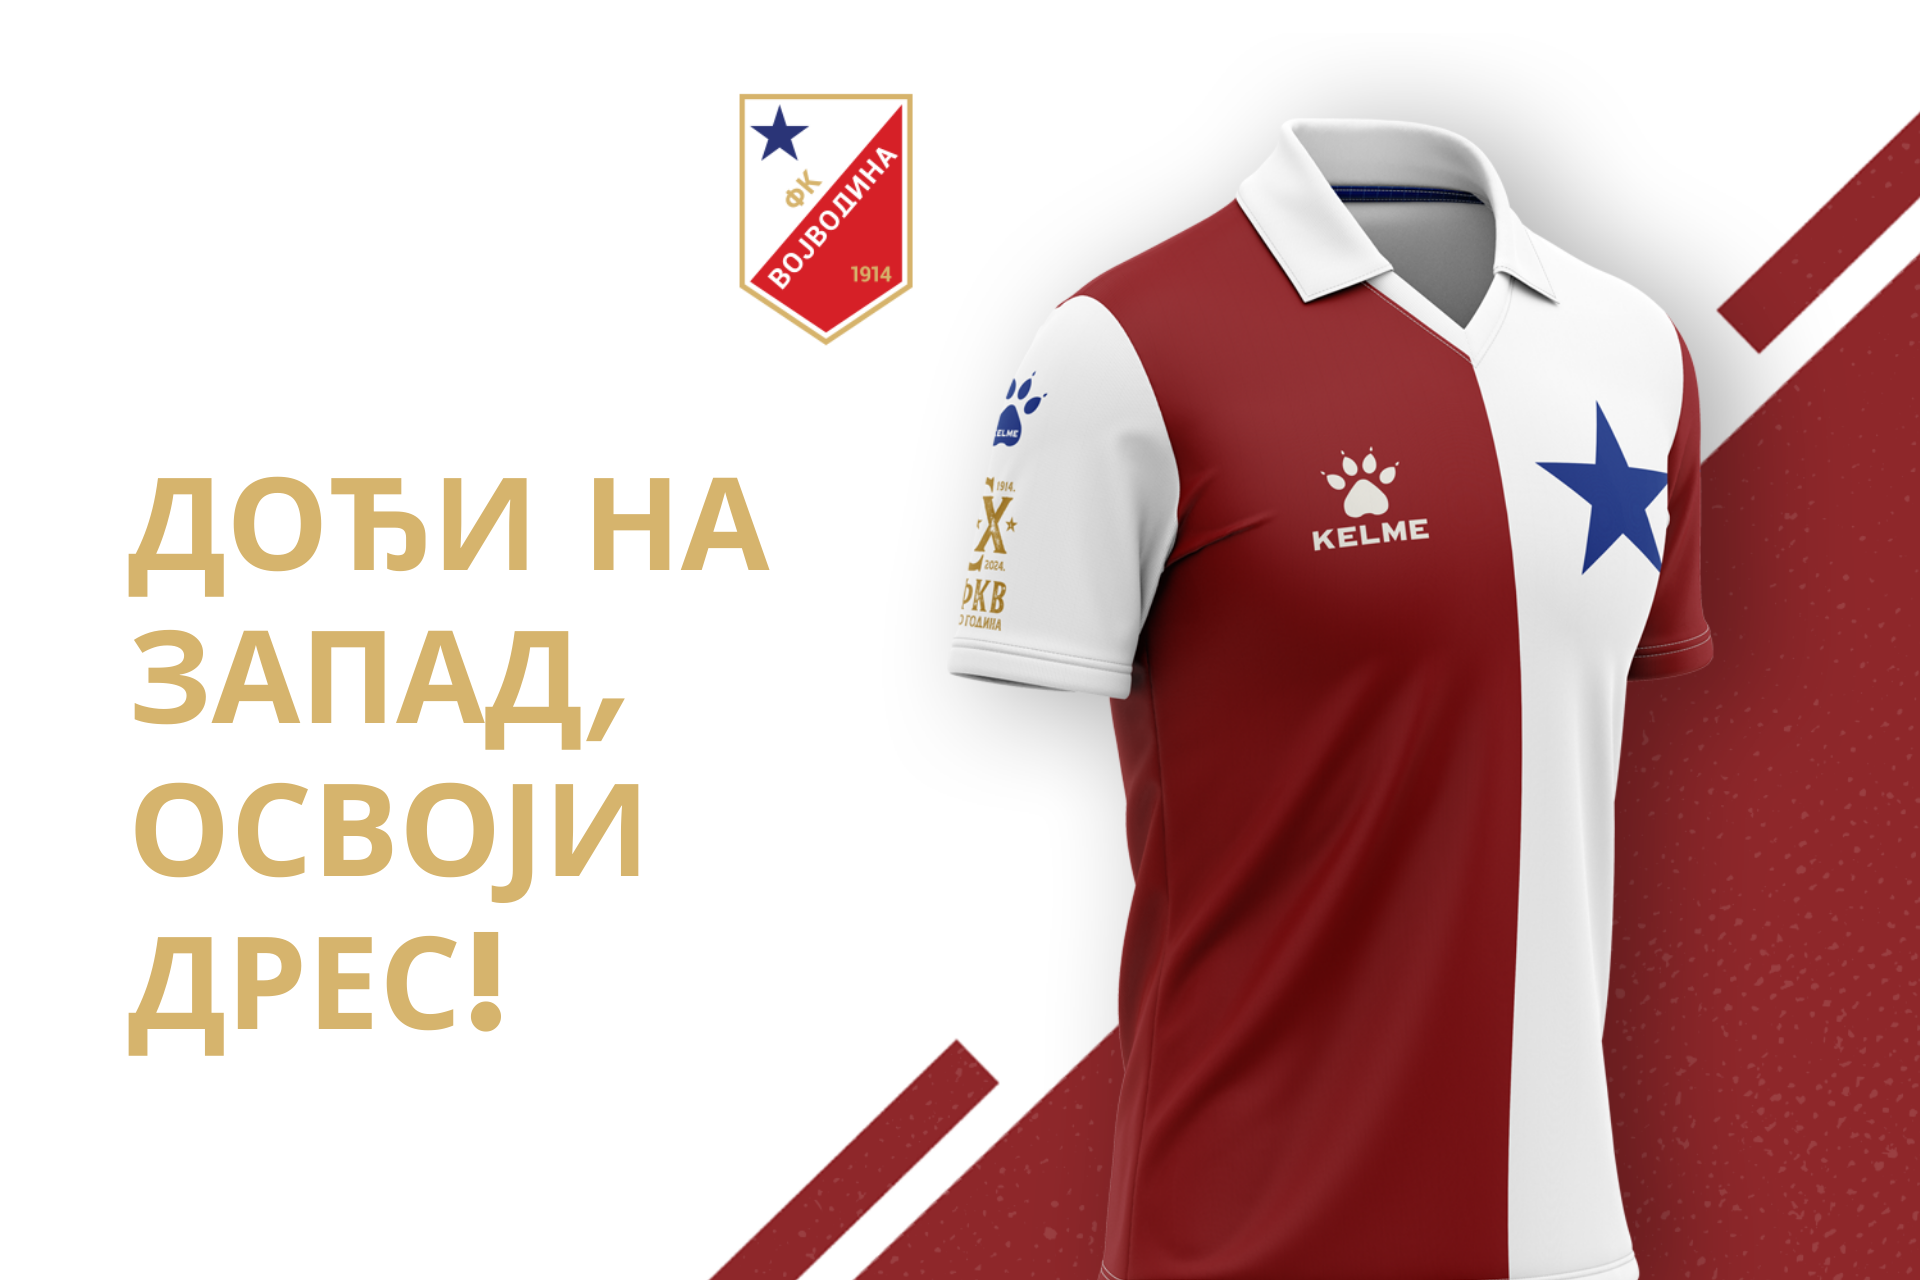 Novi dres Vojvodine za 2023/24 - Sportal